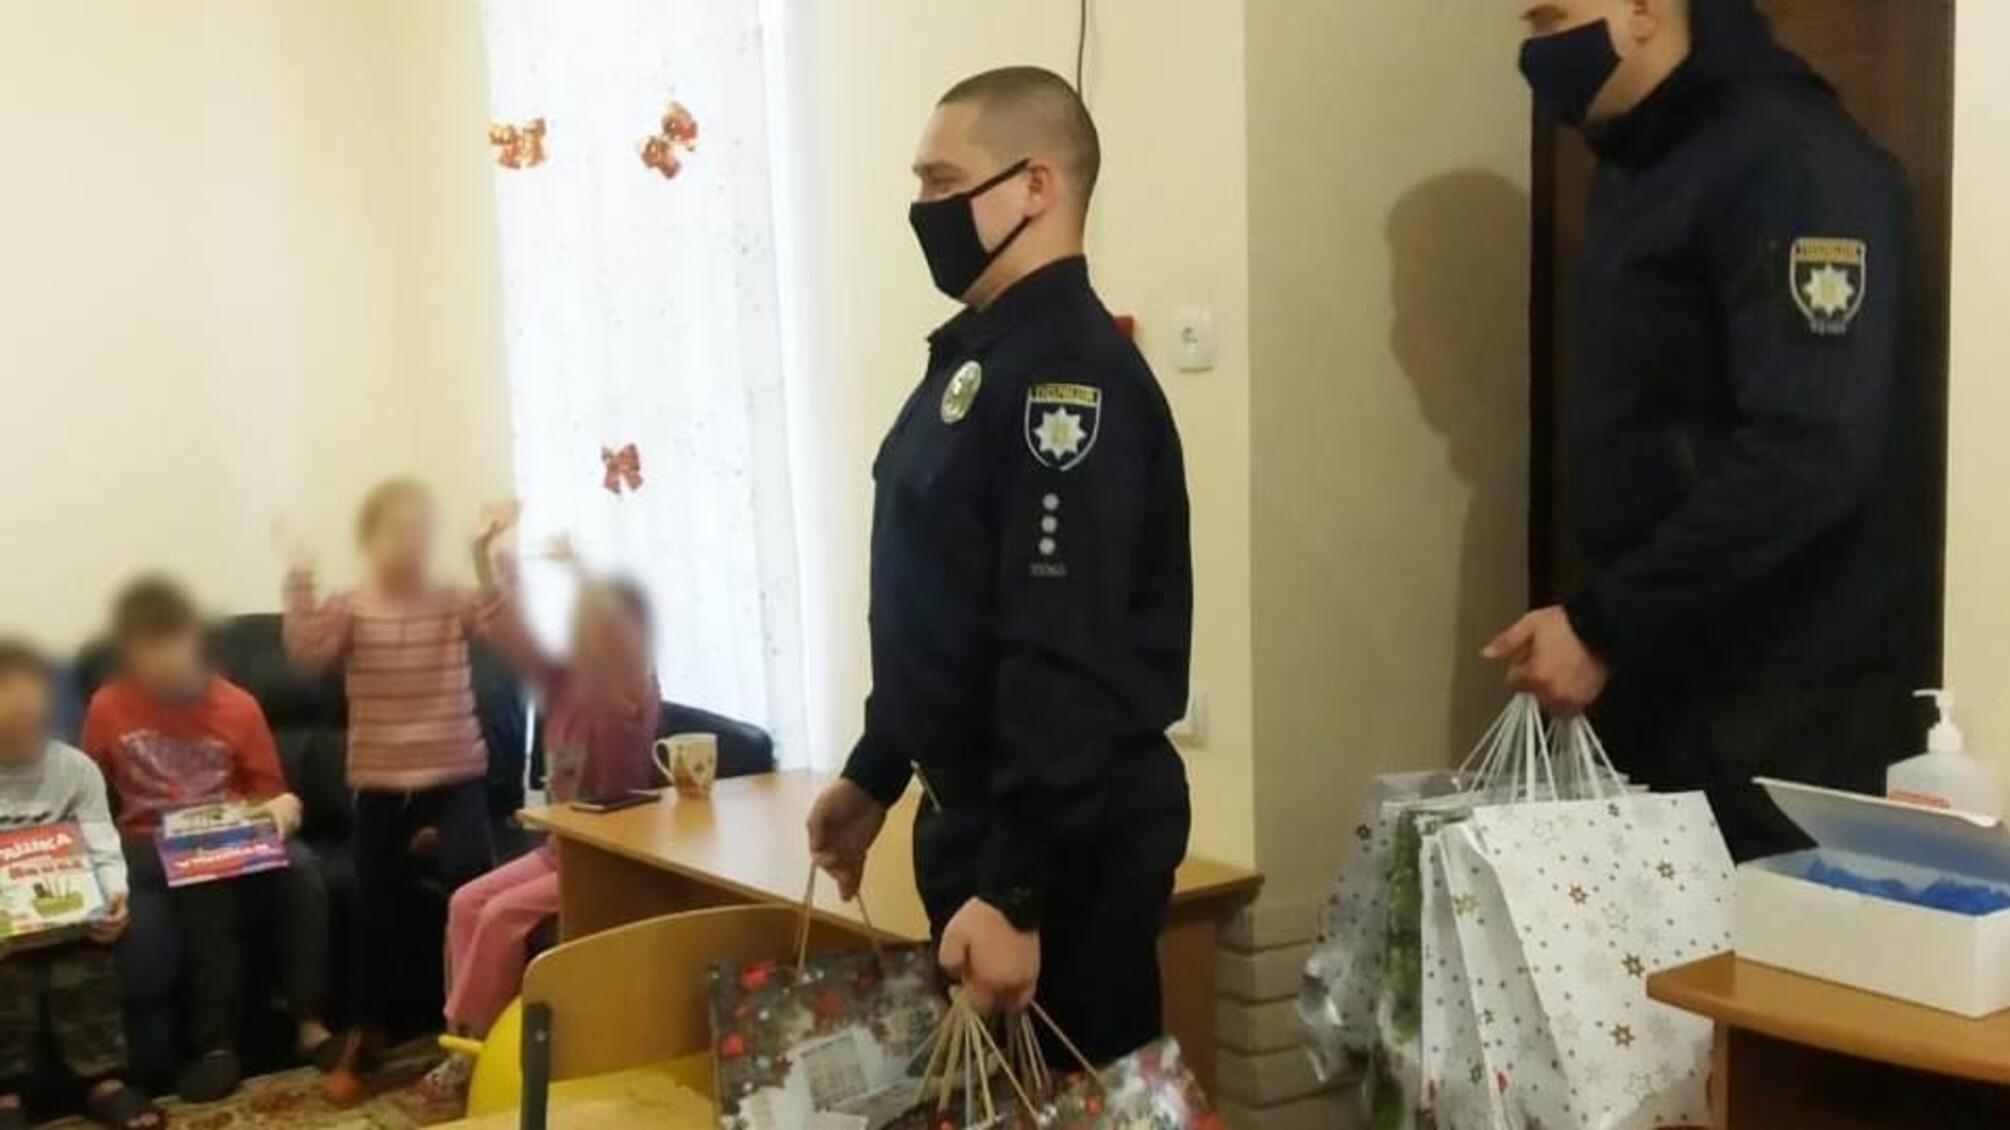 Поліцейські відвідали маленьких мешканців одеського реабілітаційного центру допомоги постраждалим від домашнього насильства